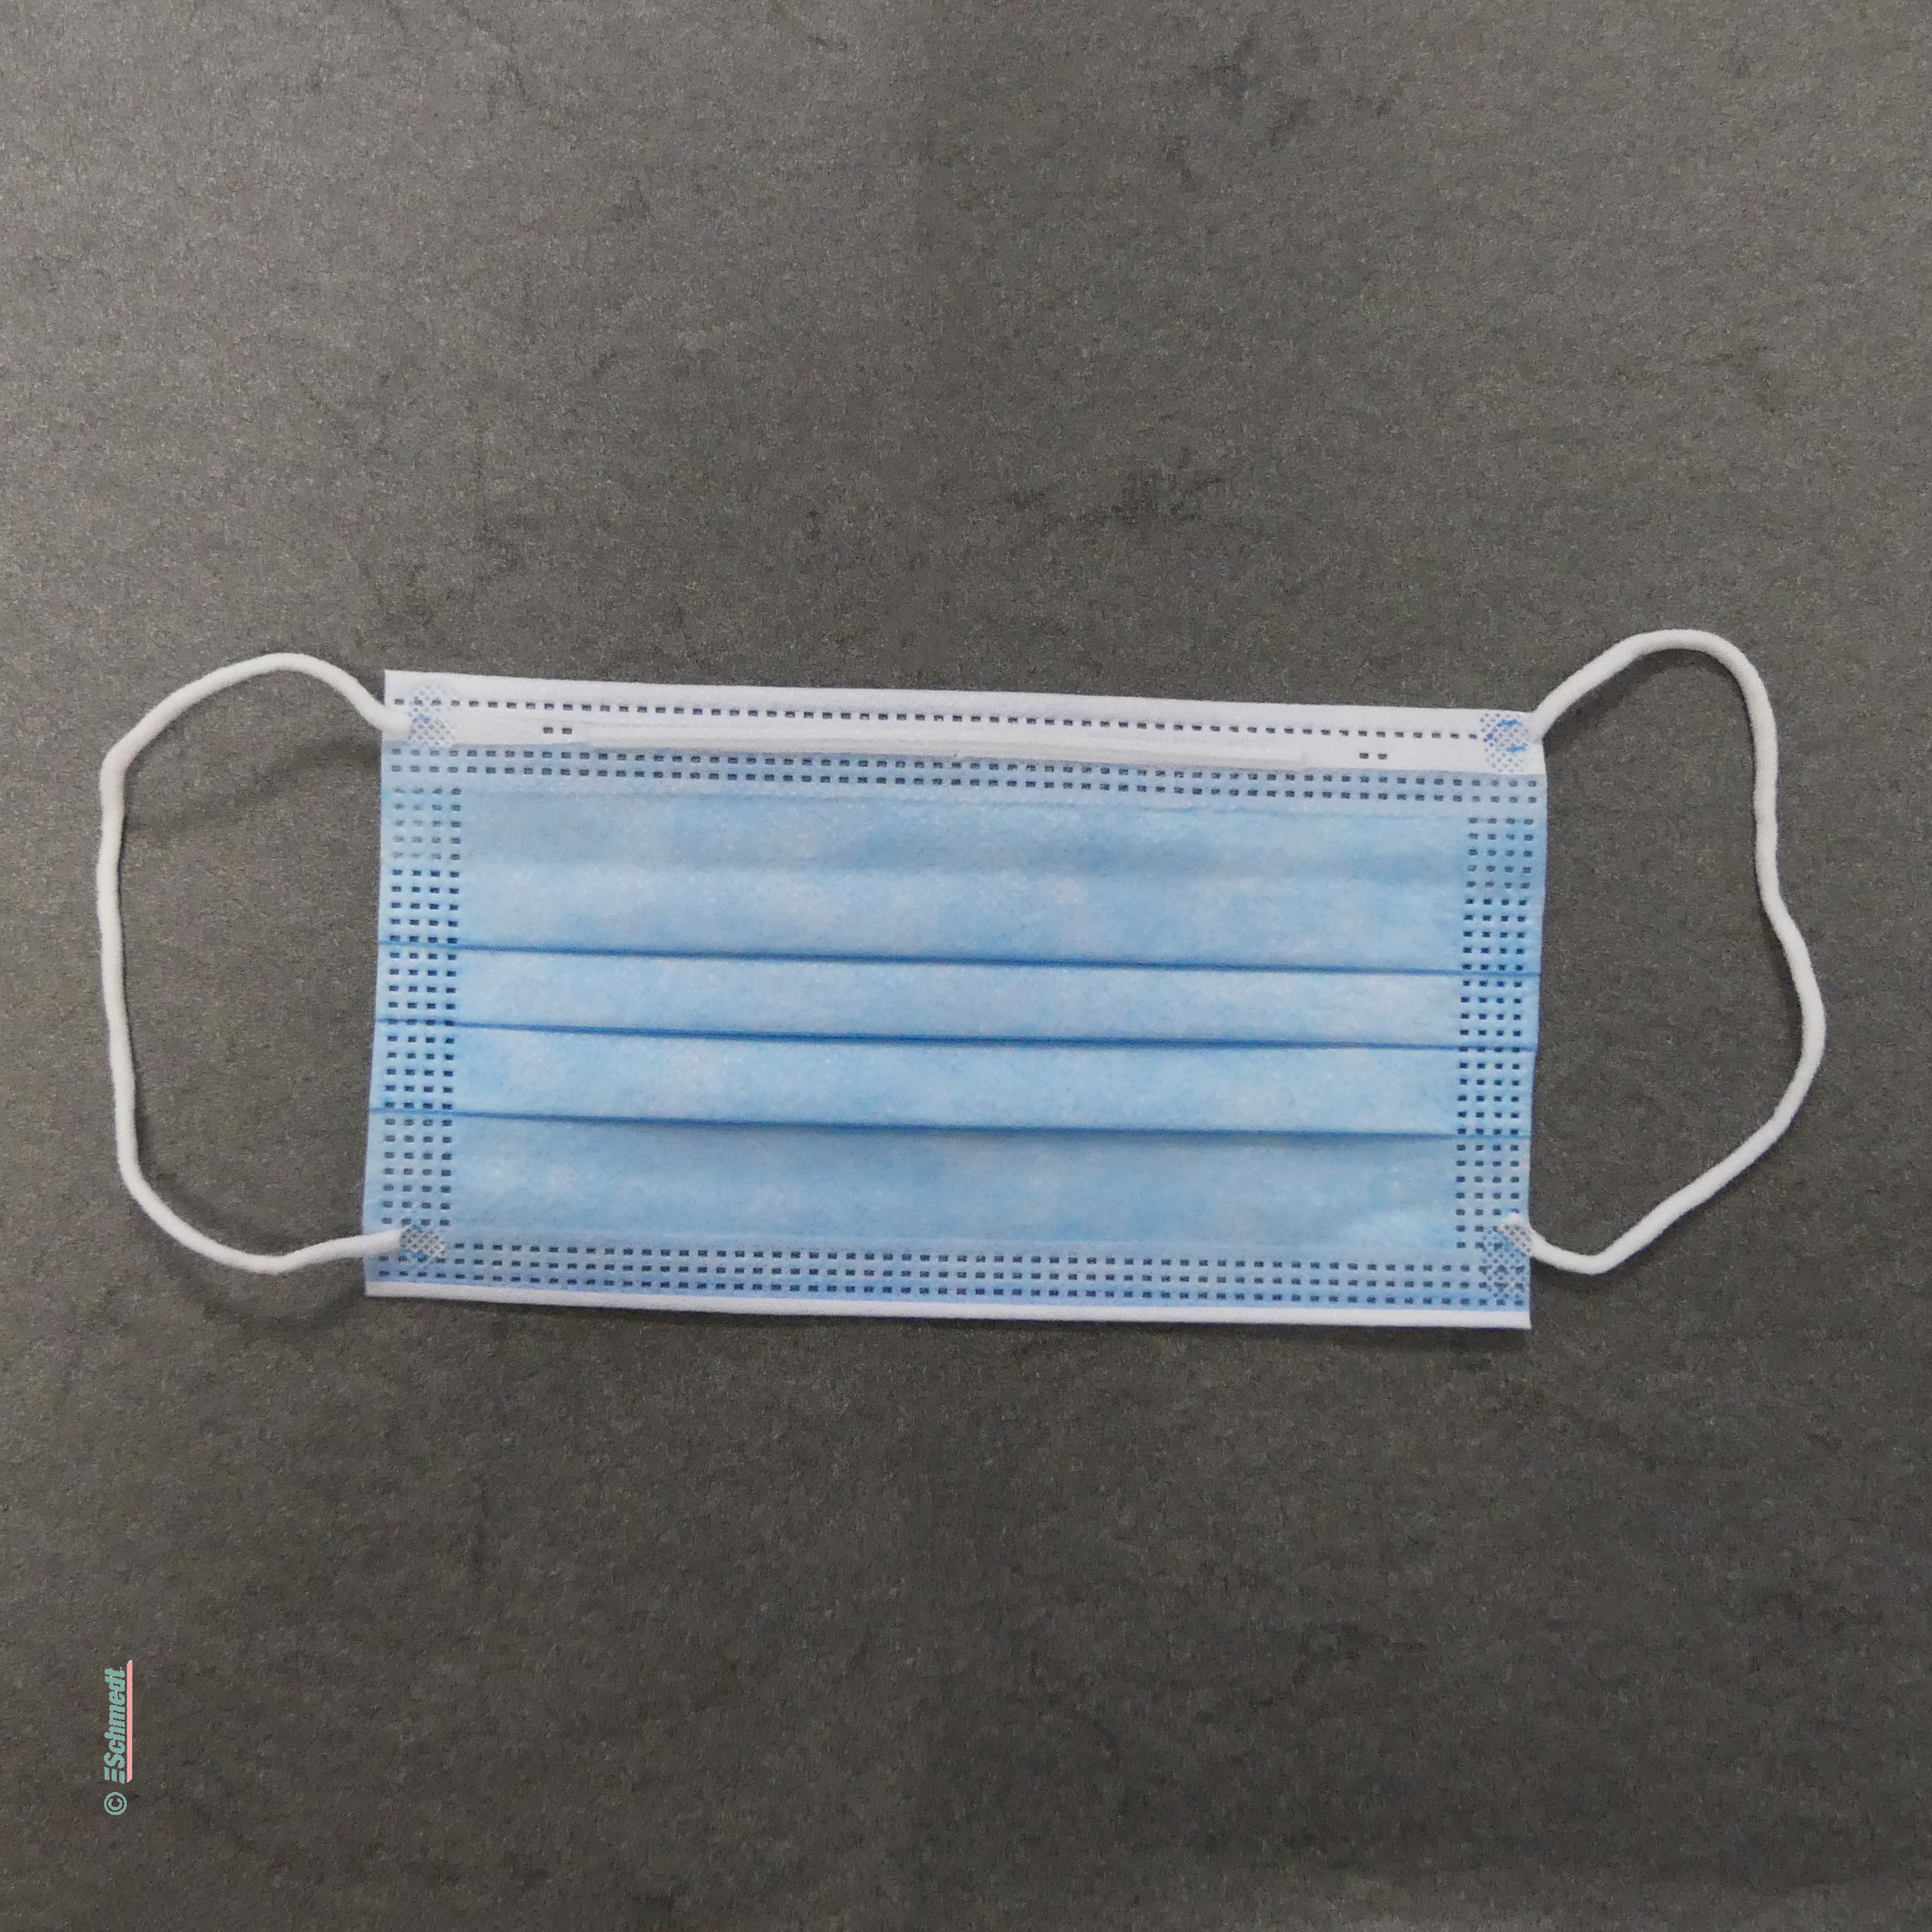 Masque hygiénique jetable, bleu - Type IIR, de 3 couches / boîte de 50 pcs - Application : protège le porteur contre l'inhalation 
de bacté... - image-1